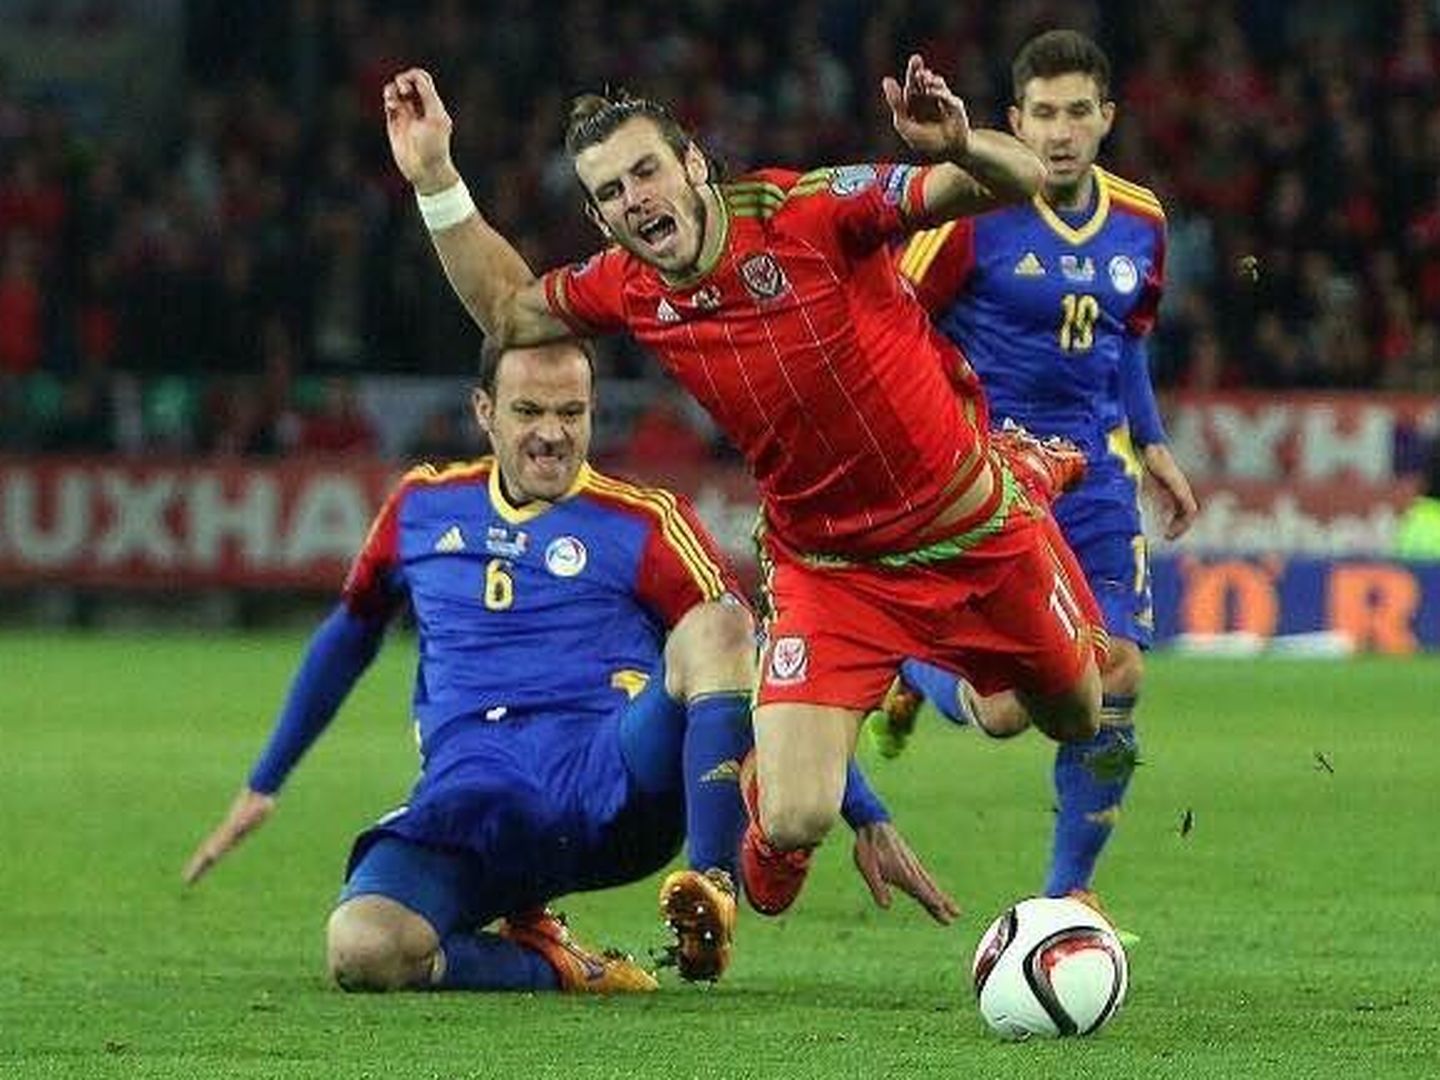 Lima intenta robar el balón a Bale (Daily Mirror).